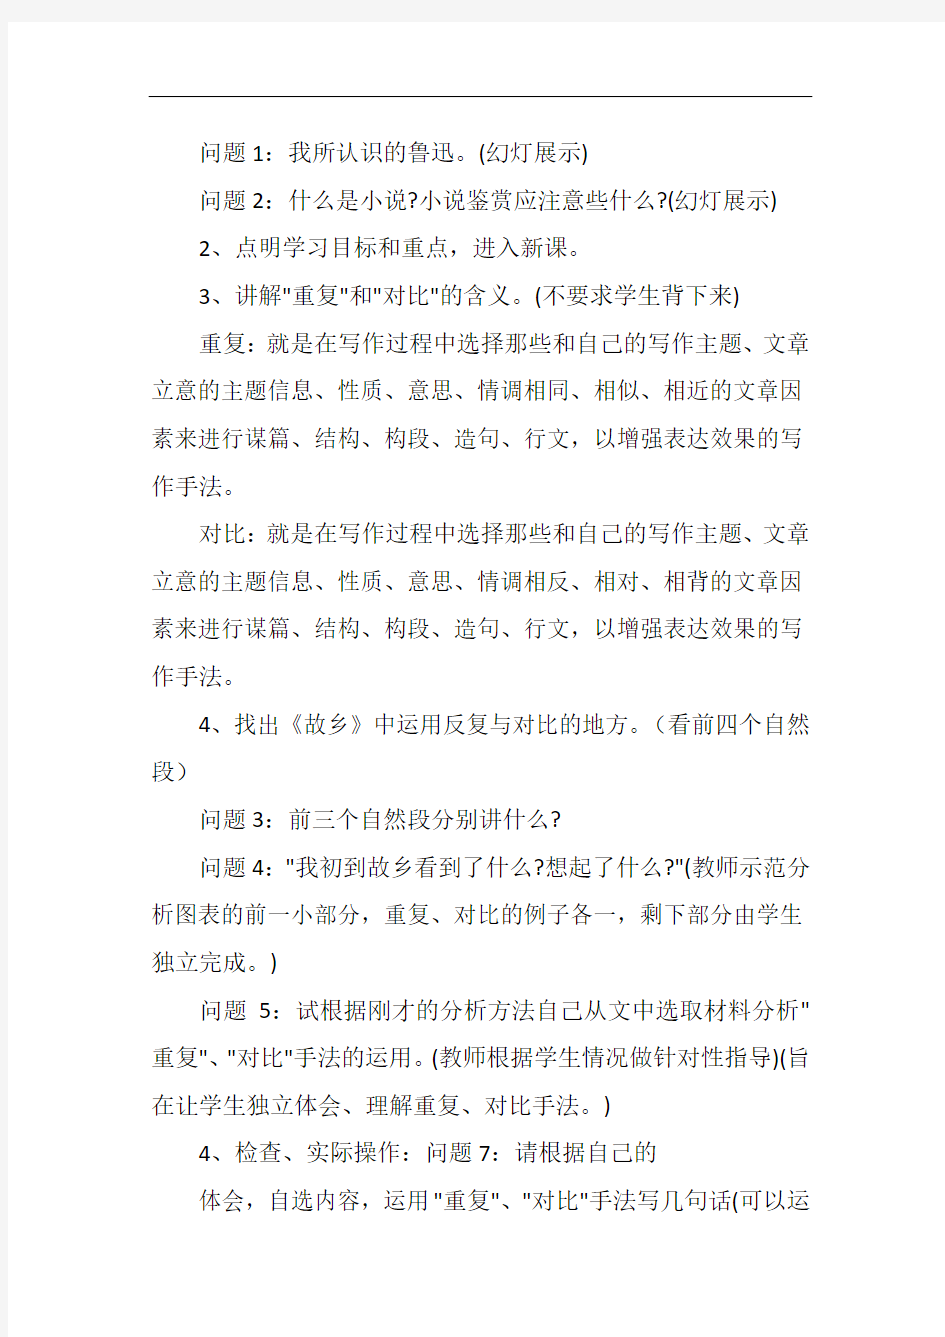 初中语文公开课教案《故乡》教学设计